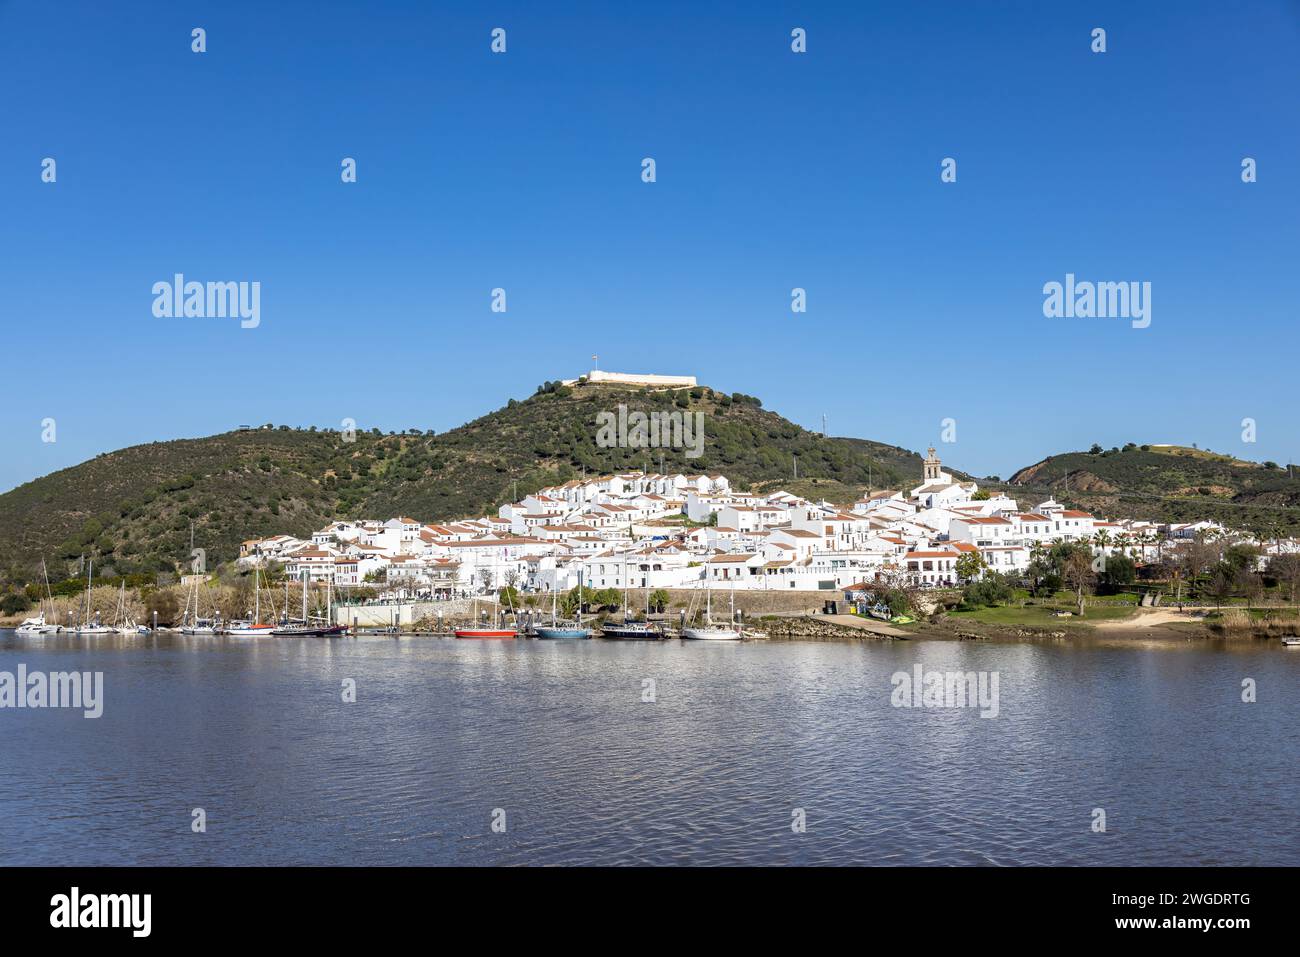 Vista panoramica del villaggio di Sanlucar de Guadiana a Huelva, Andalusia, sulle rive del fiume Guadiana, al confine tra spagna e portogallo, di fronte Foto Stock